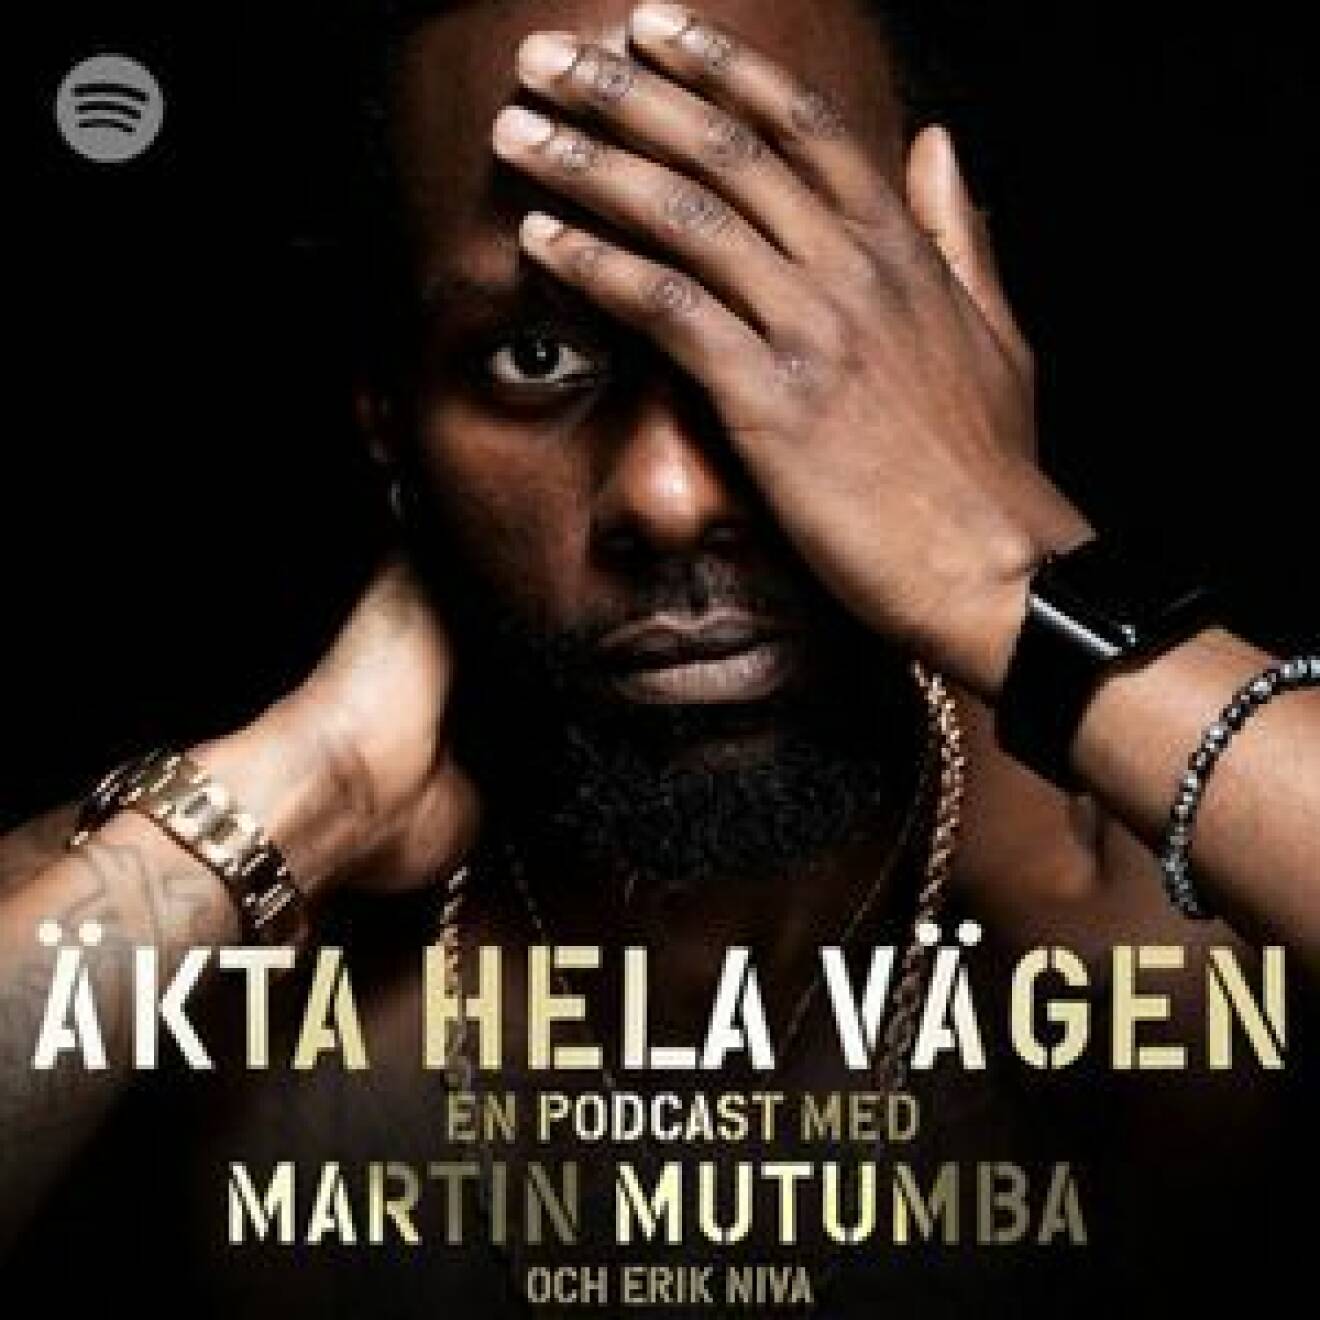 Martin Mutumba